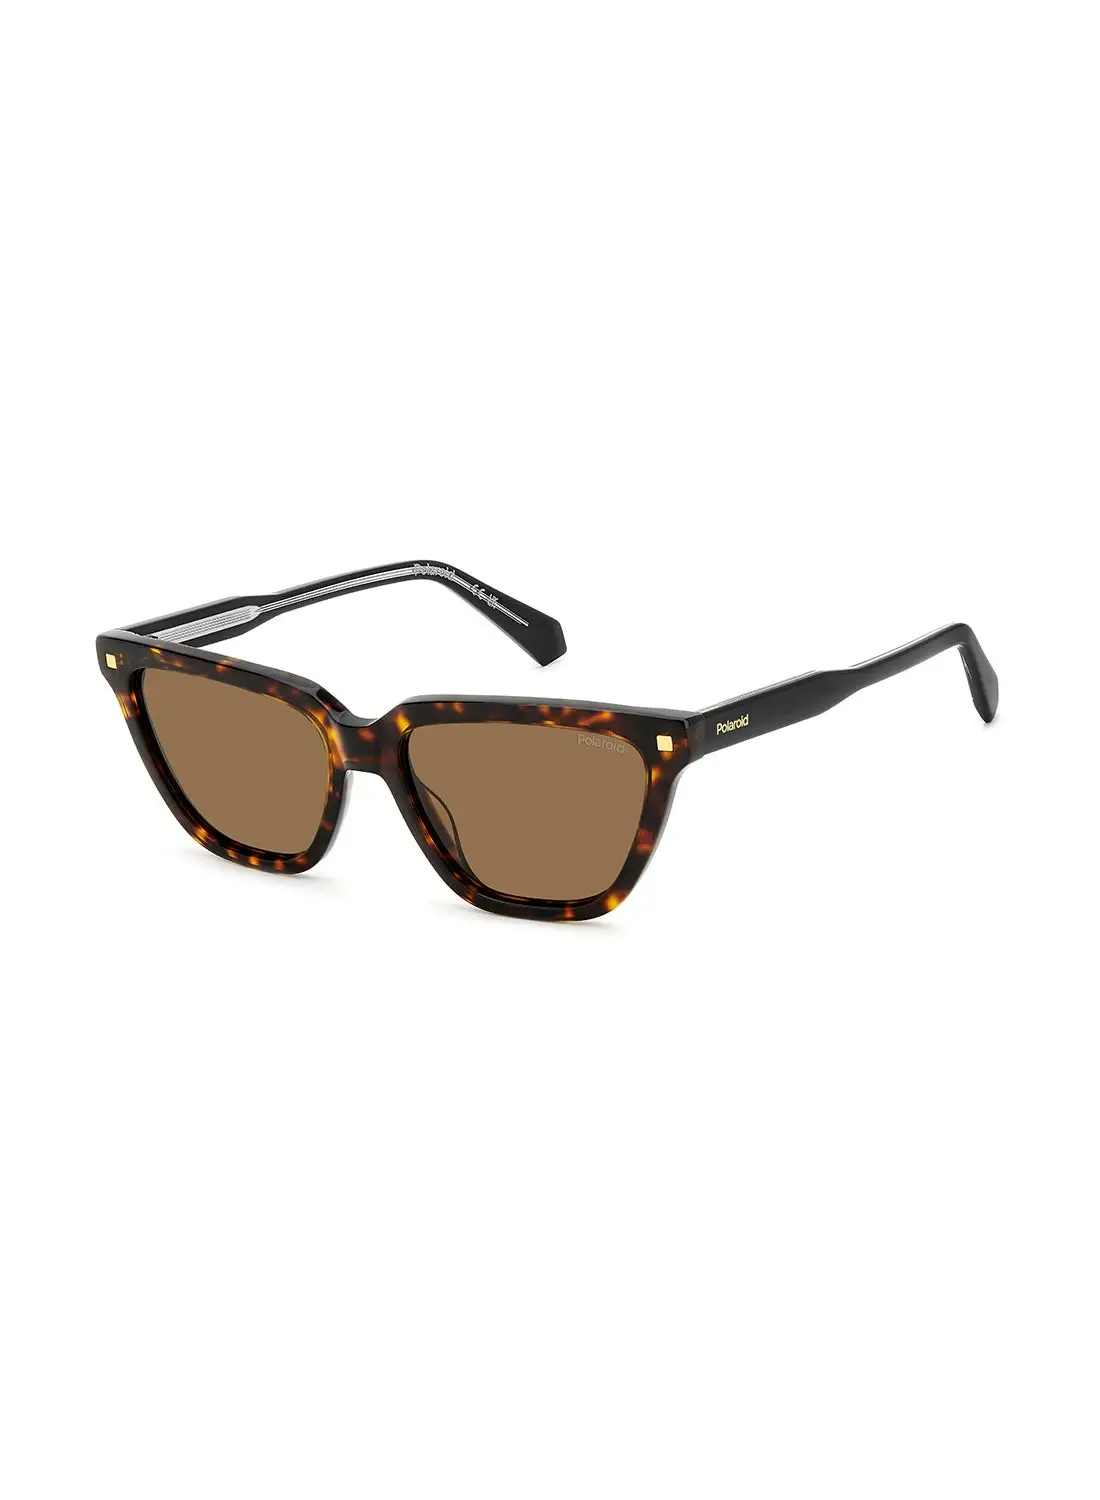 Polaroid Women's Polarized Rectangular Sunglasses - Pld 4157/S/X Brown Millimeter - Lens Size: 55 Mm